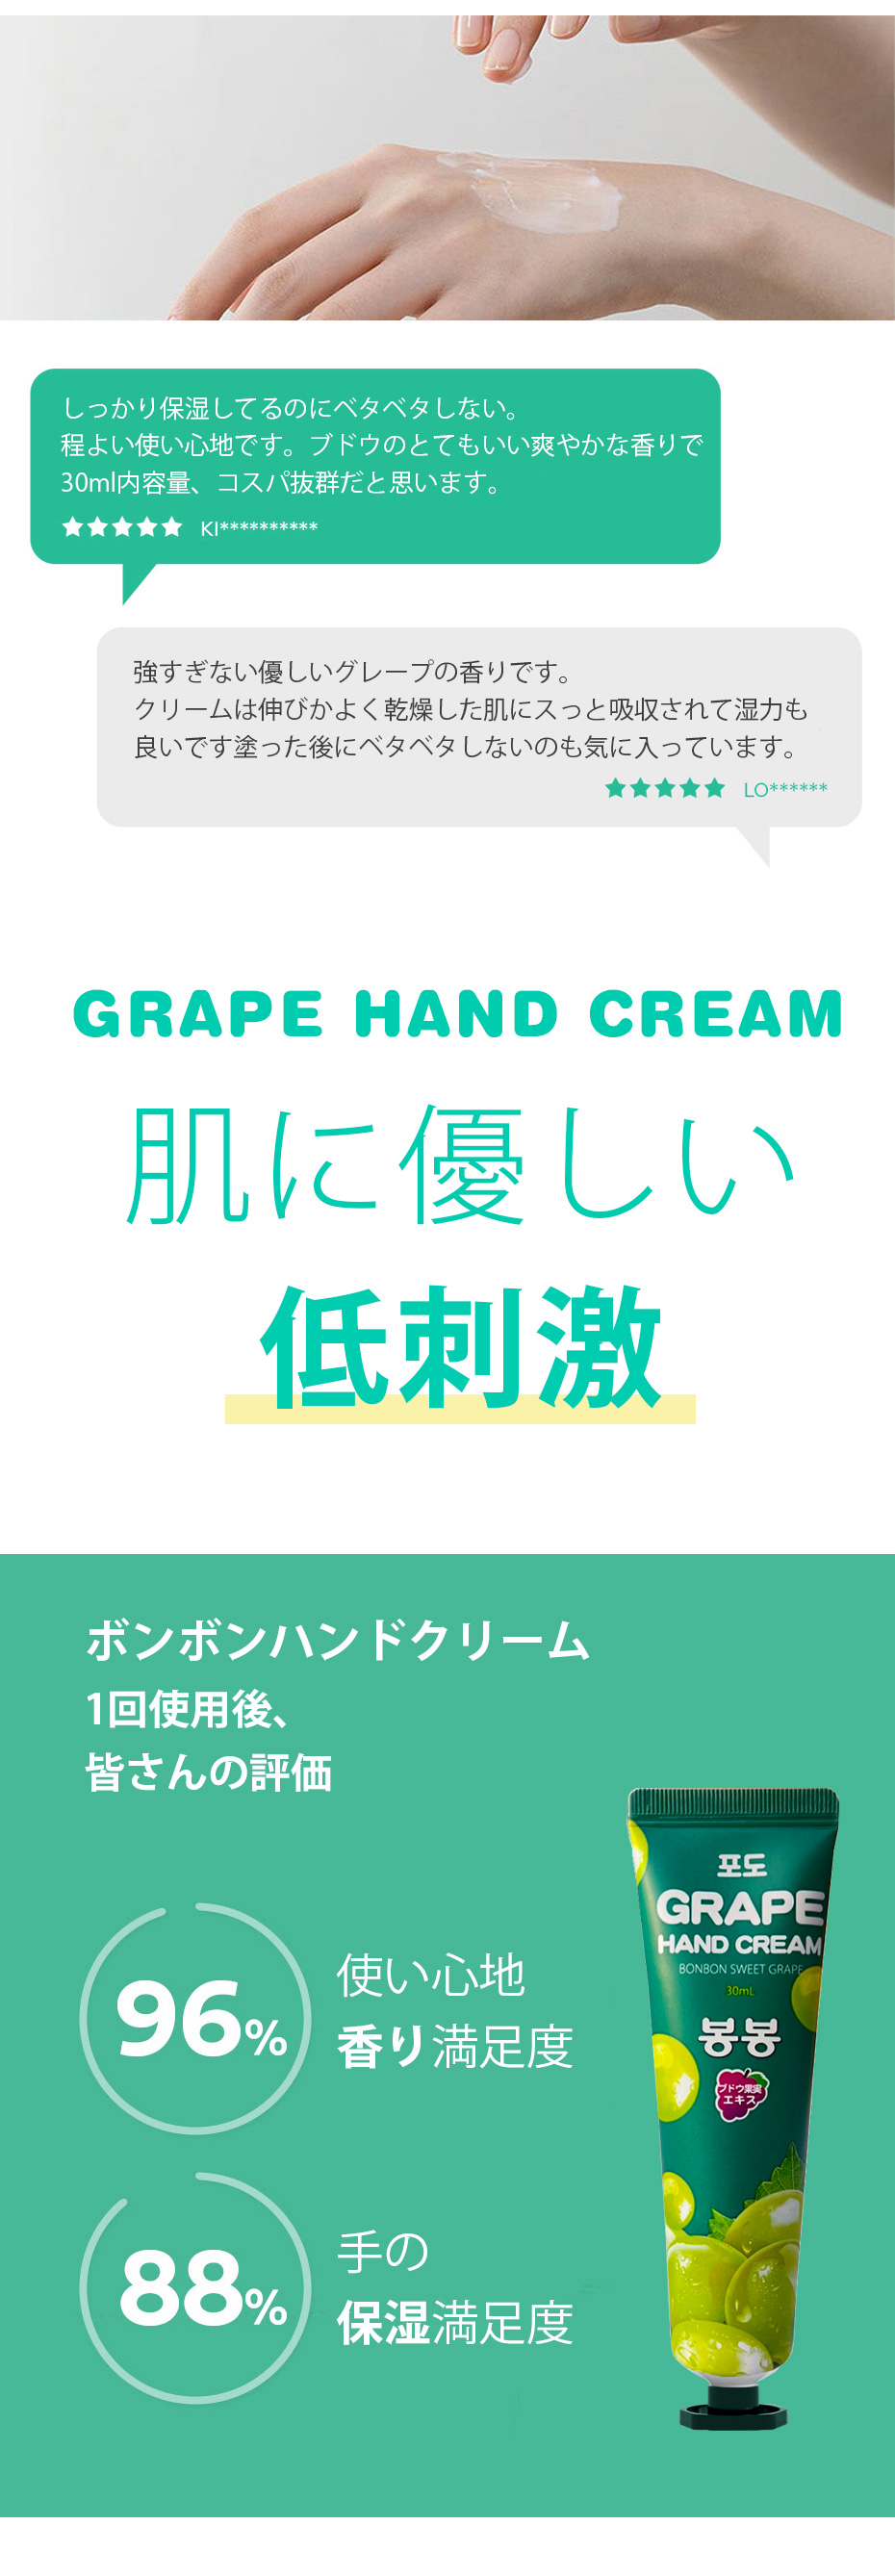 GRAPE HAND CREAM/ボンボンハンドクリーム/グレープの香り